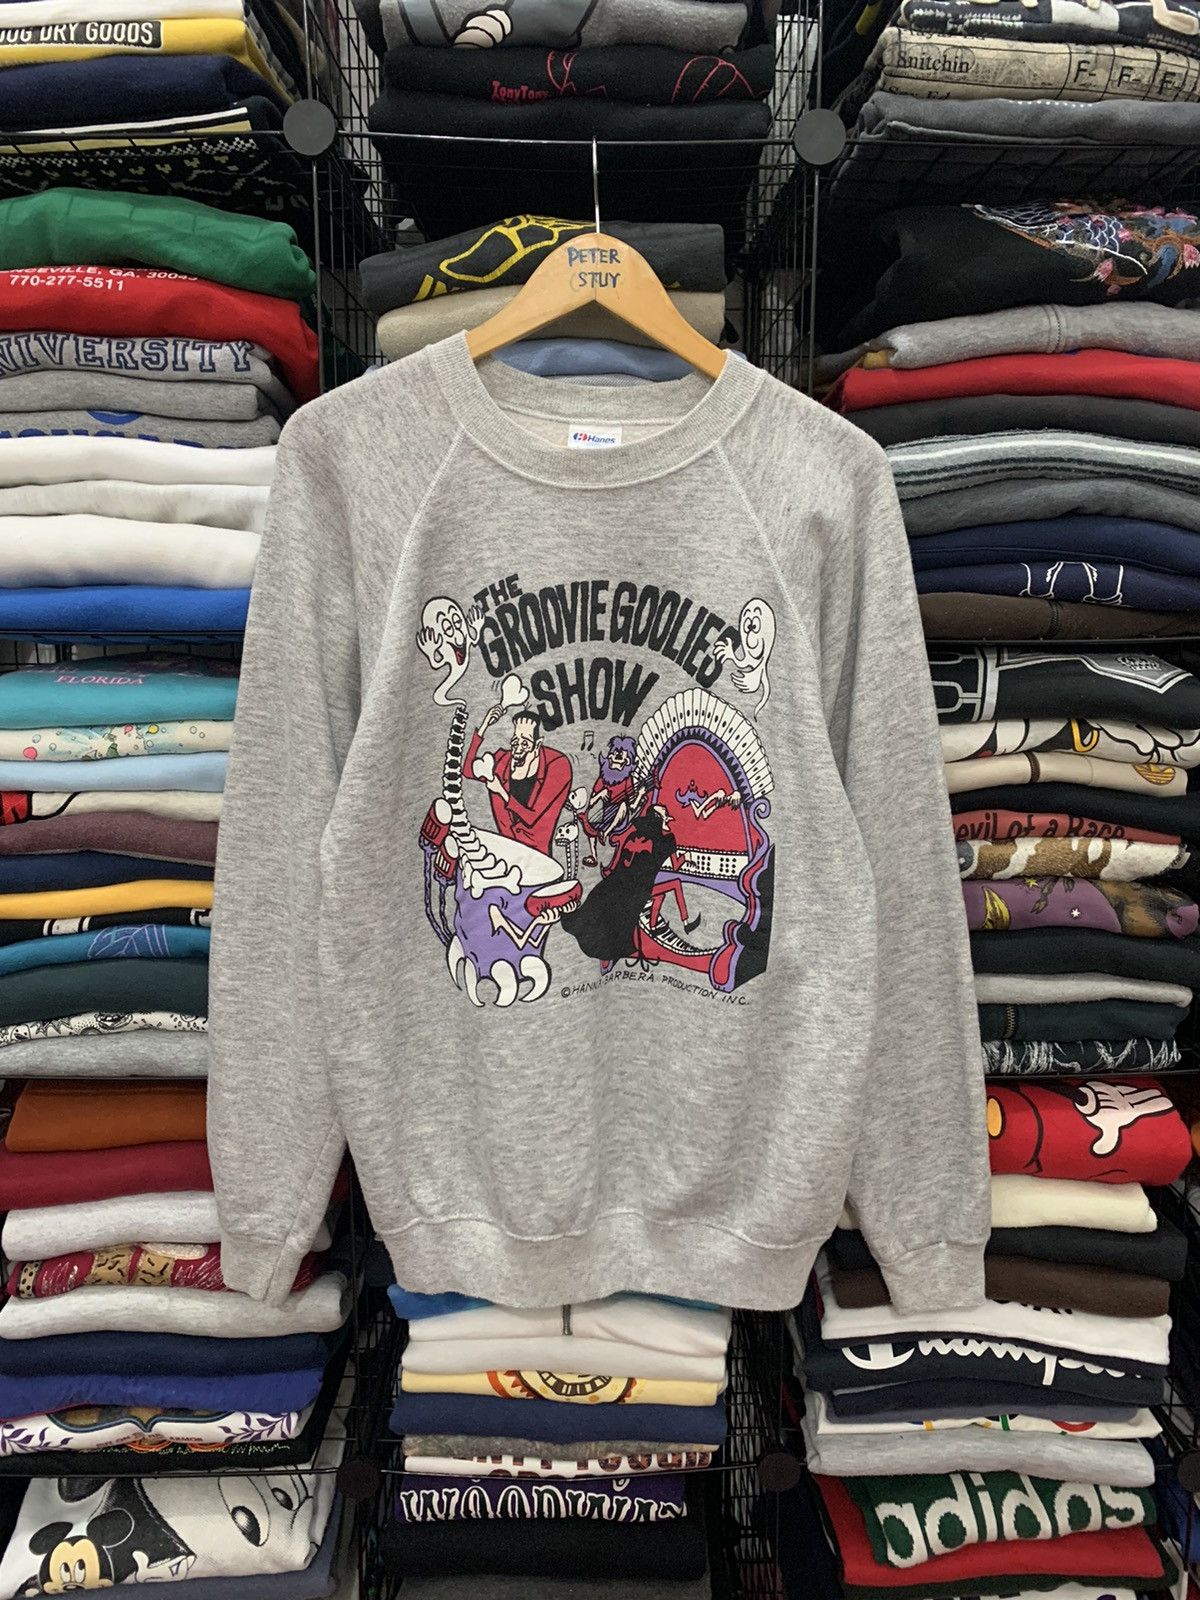 Vintage Vintage 80’s The Groovie Goolies Show Sweatshirt Size US L / EU 52-54 / 3 - 1 Preview